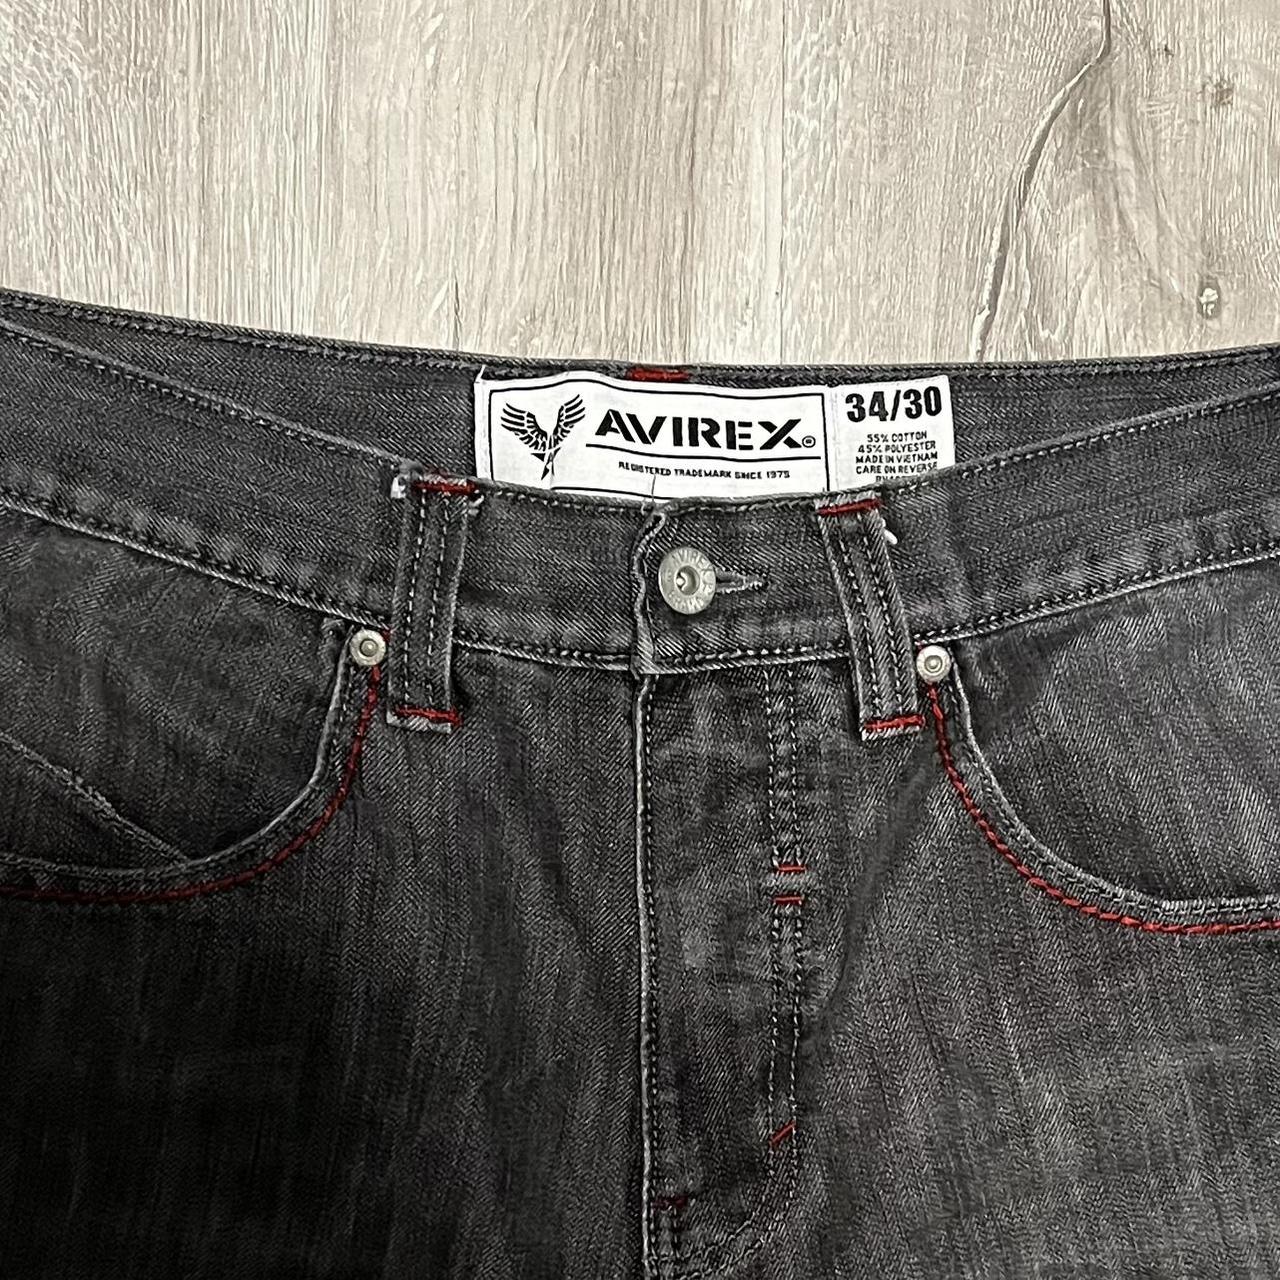 Avirex Cross Jeans - Size 34 x 30 Great... - Depop